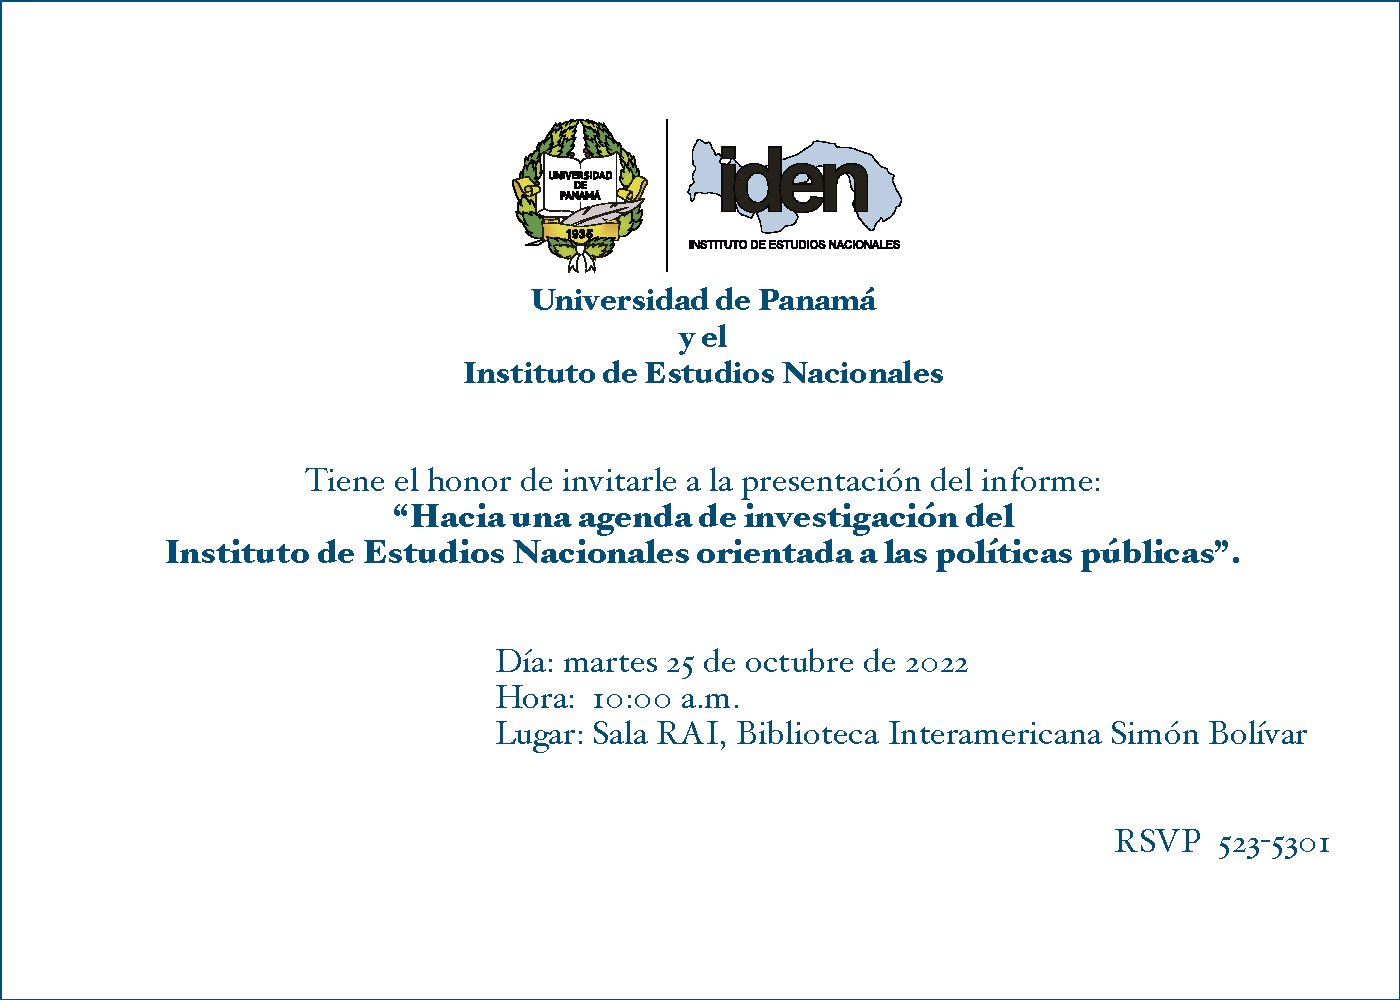 Invitación: Hacia una agenda de investigación del Instituto de Estudios Nacionales orientada a las políticas públicas